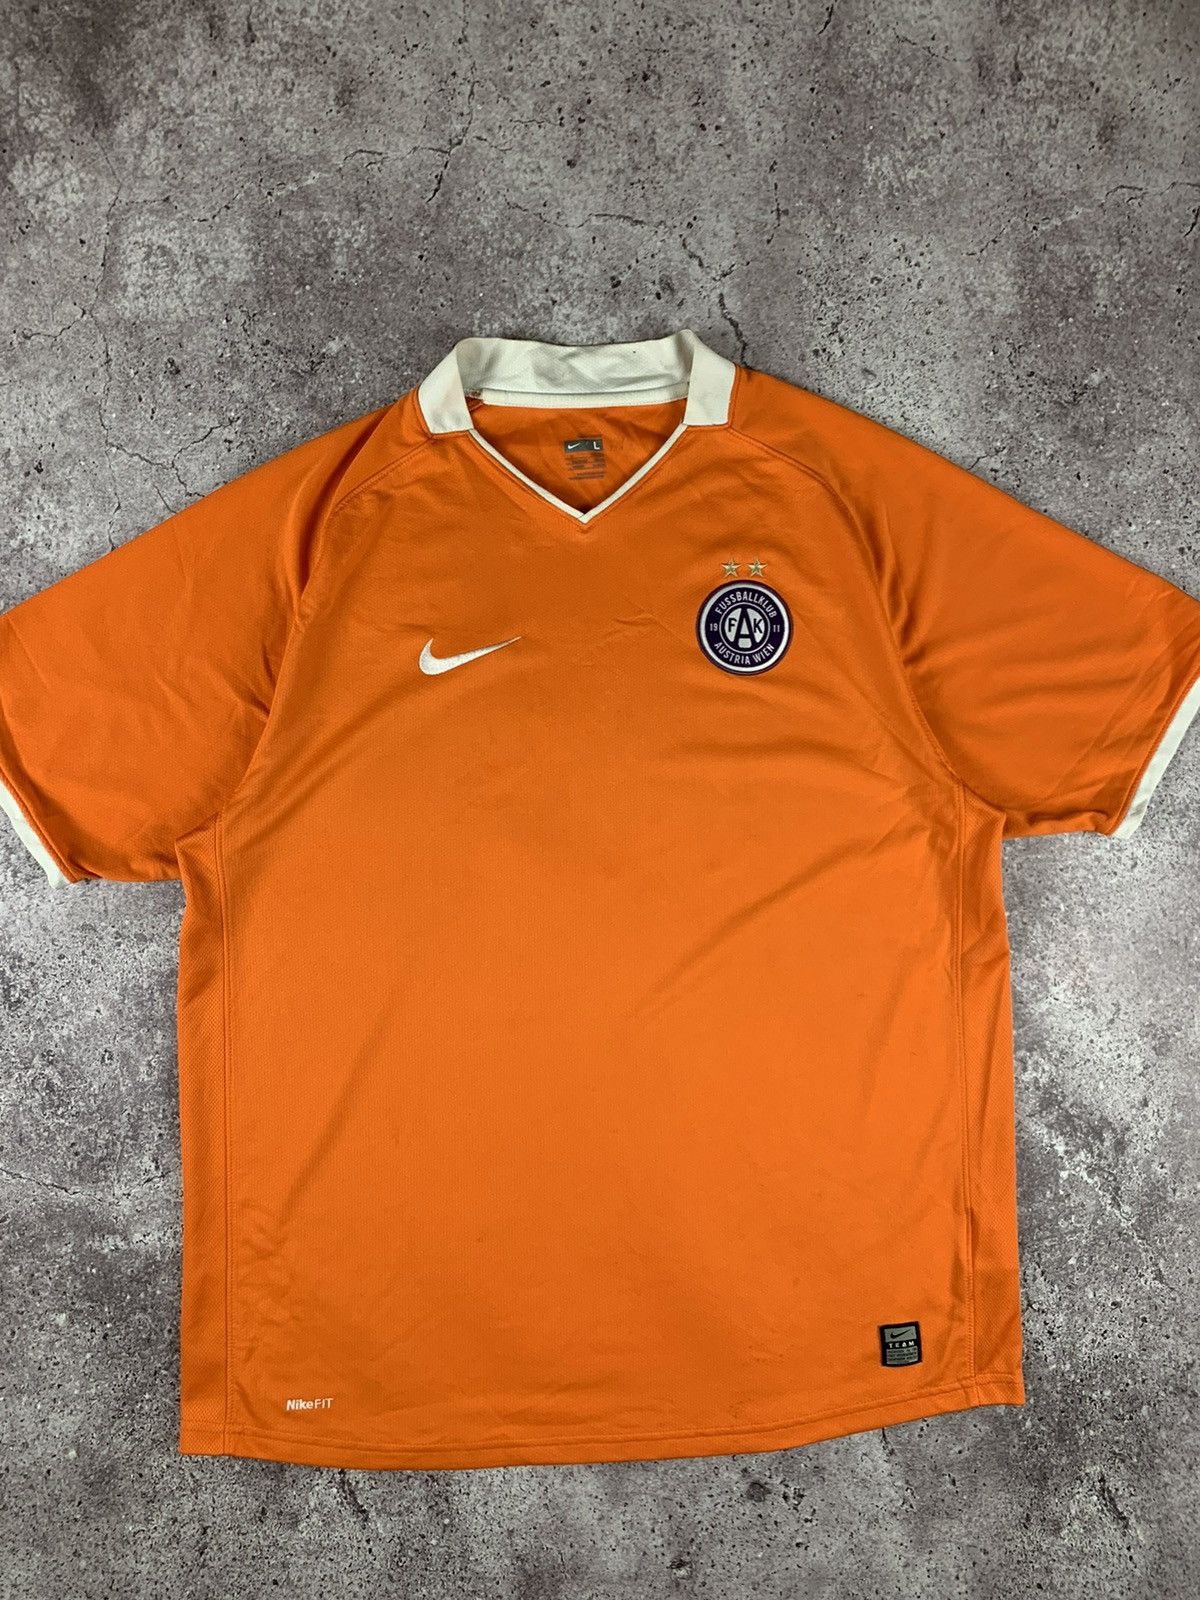 Pre-owned Nike X Soccer Jersey Nike Austria Wien 2008 Season Home Kit Jersey In Orange